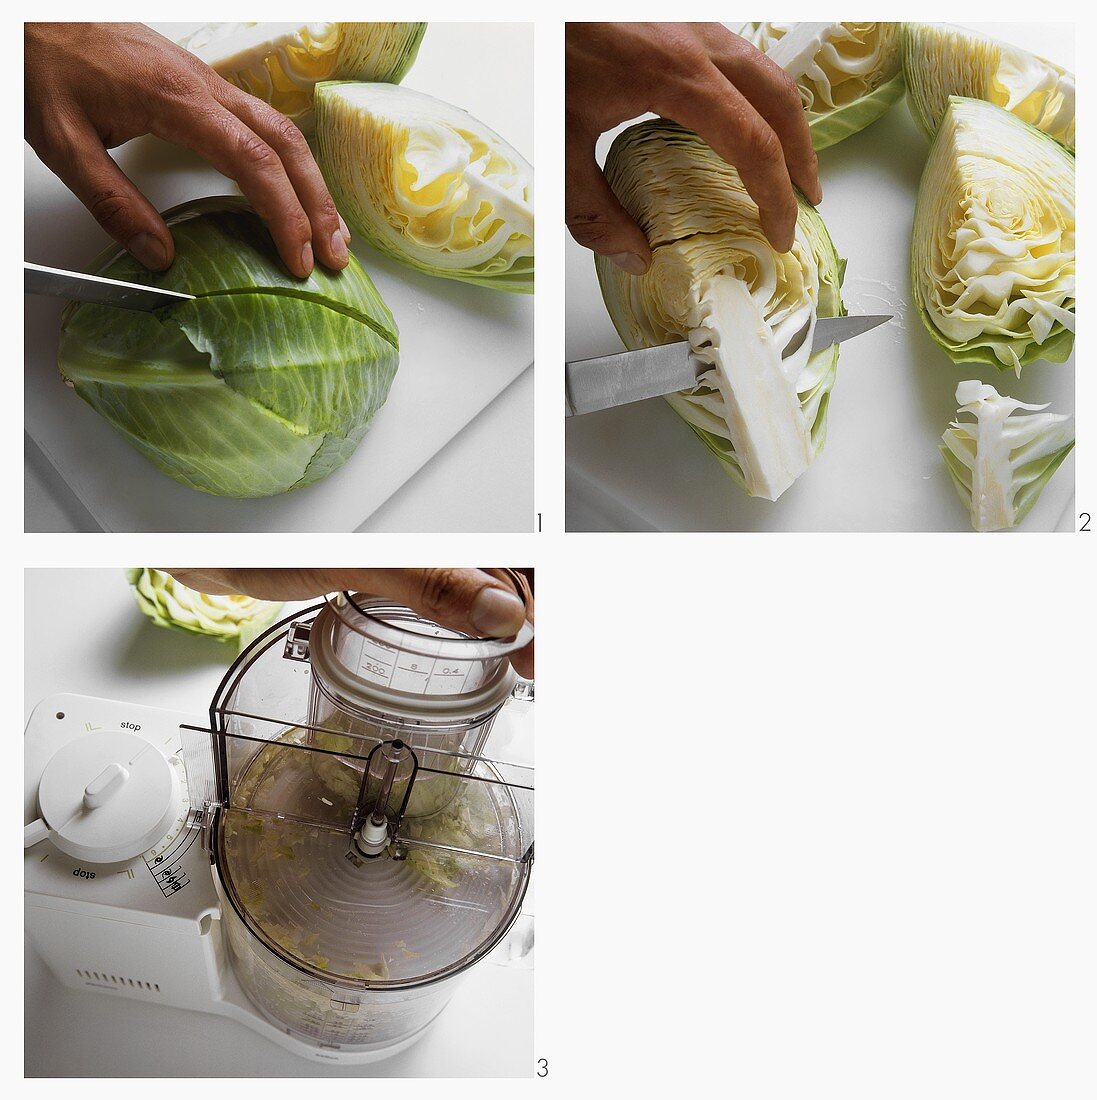 Preparing cabbage